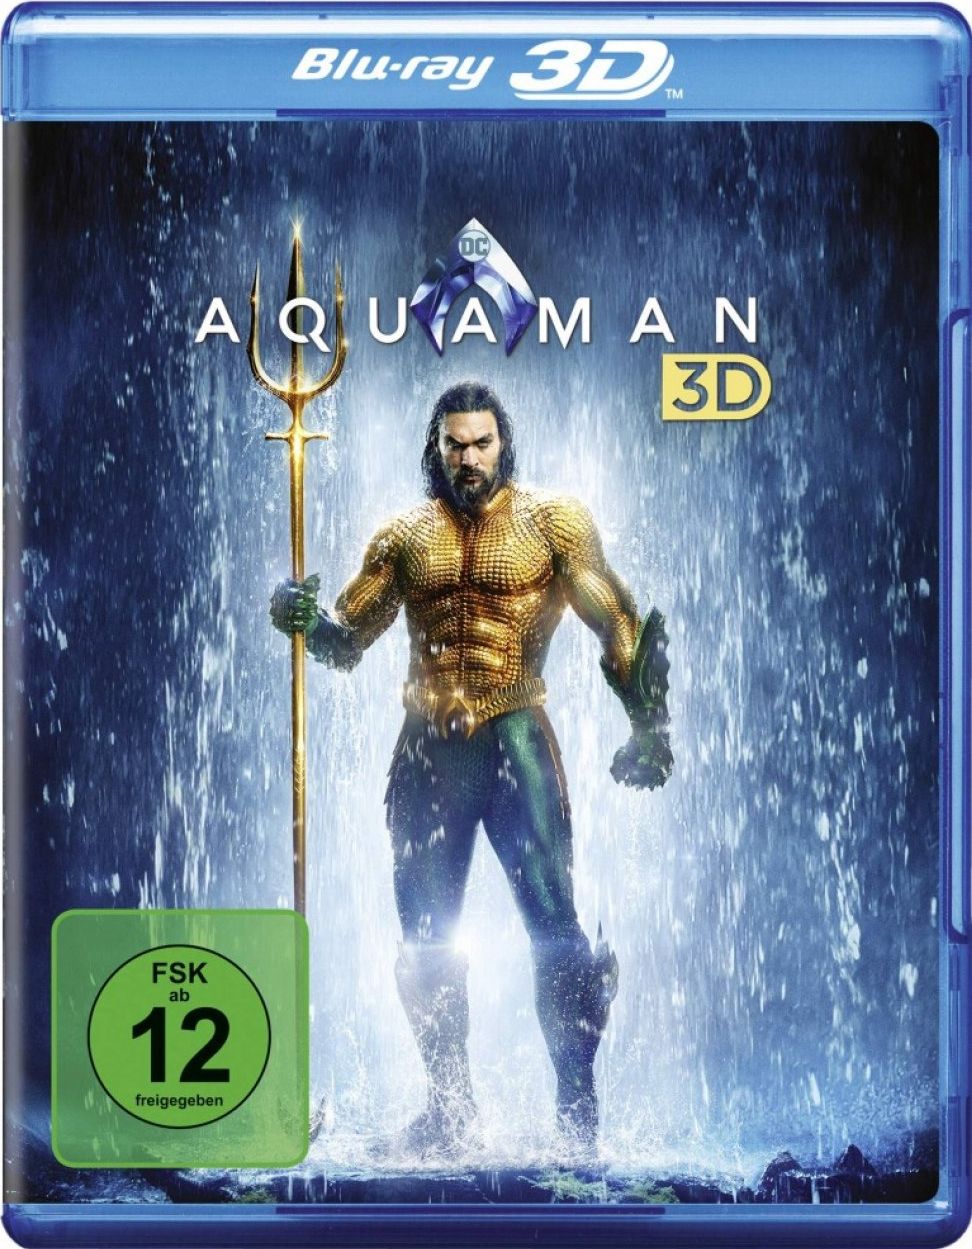 Aquaman 3D (BLURAY 3D)